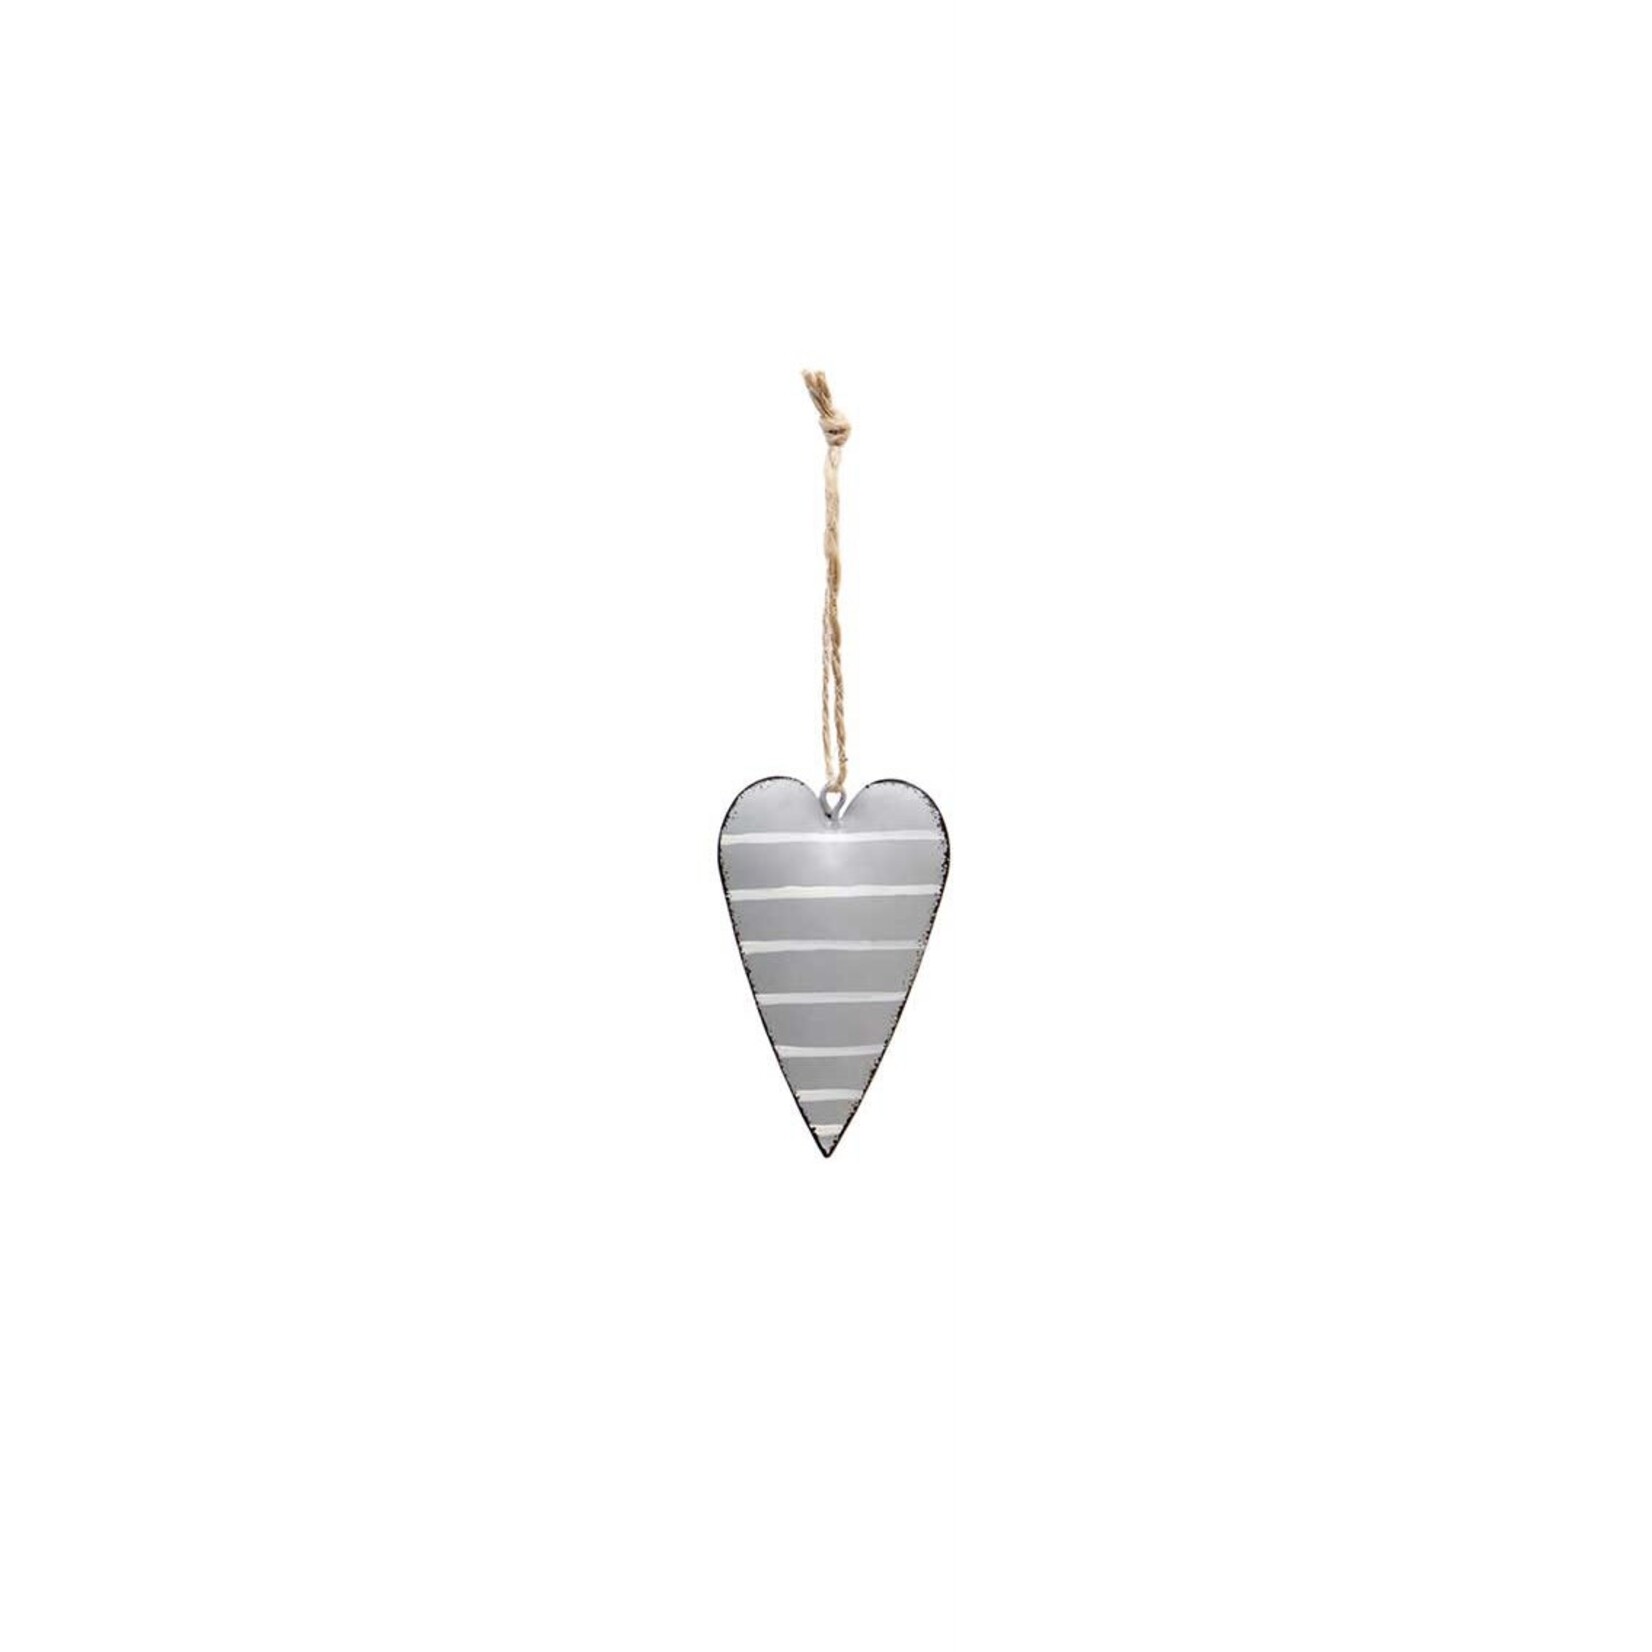 Meravic Metal Heart Ornament